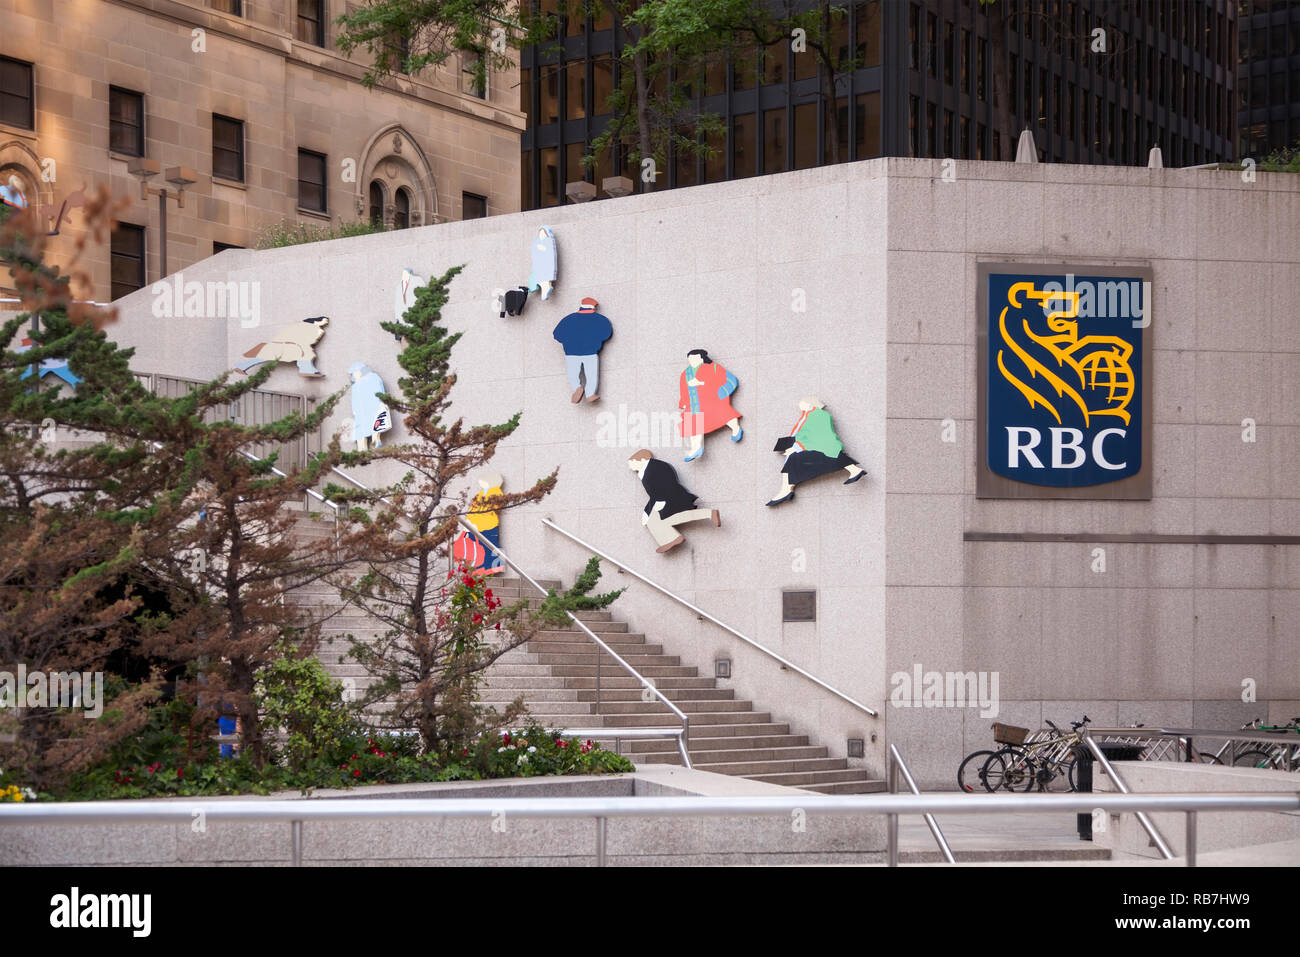 La Plaza de la Banque Royale et RBC logo sur Front Street. Ville de Toronto, Ontario, Canada. Banque D'Images